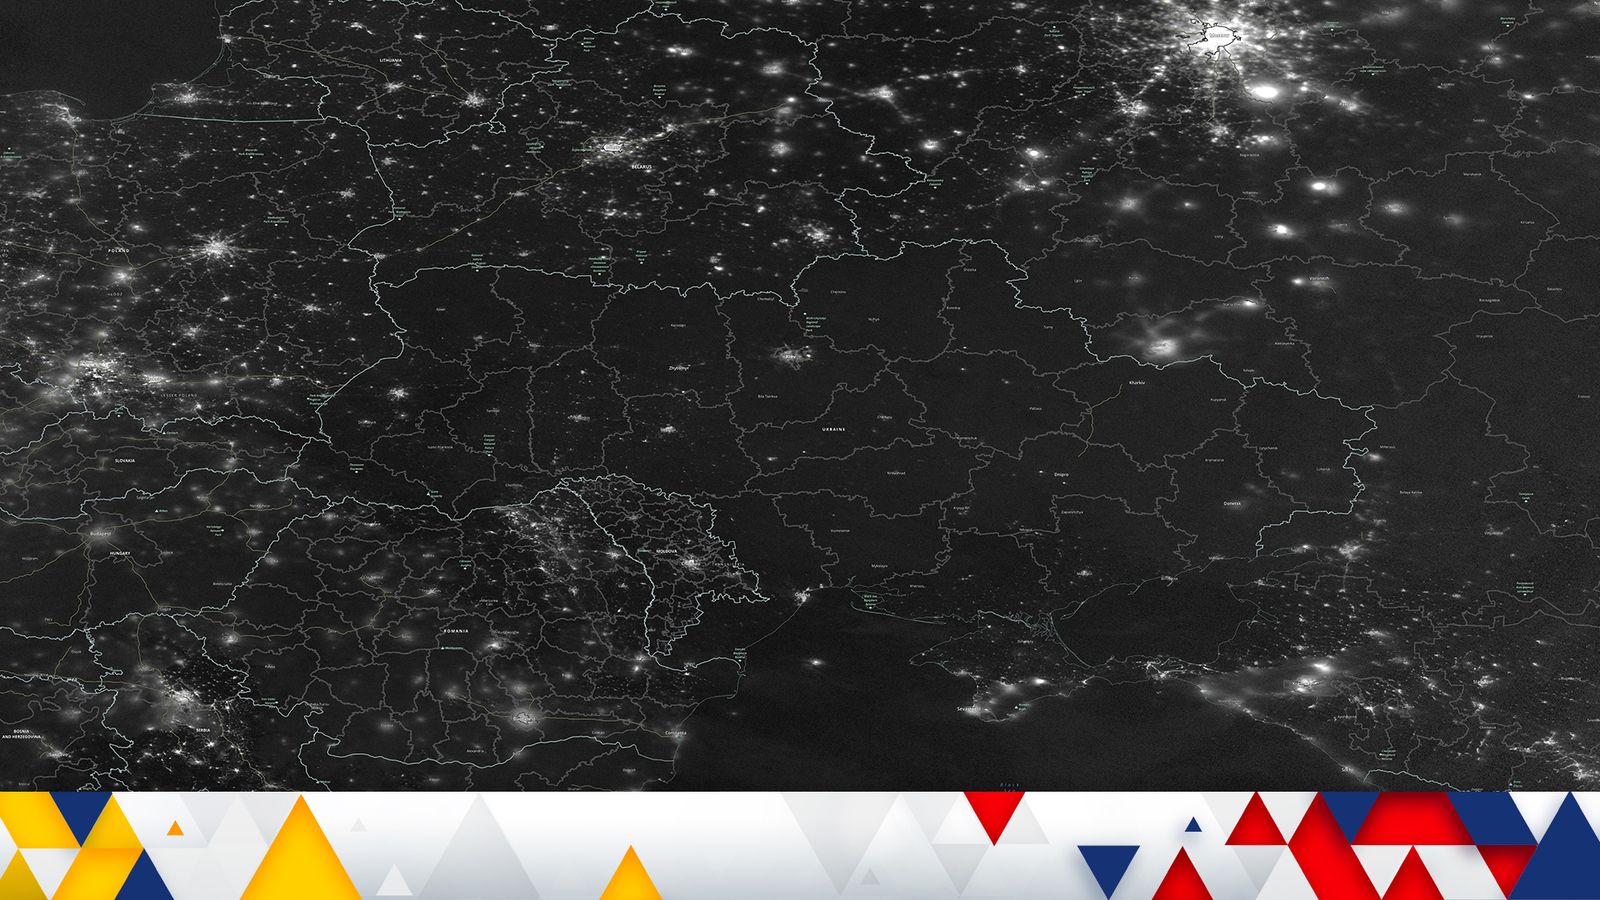 Une image satellite frappante révèle l’étendue de la pénurie d’électricité en Ukraine après les frappes de missiles russes |  Nouvelles du monde